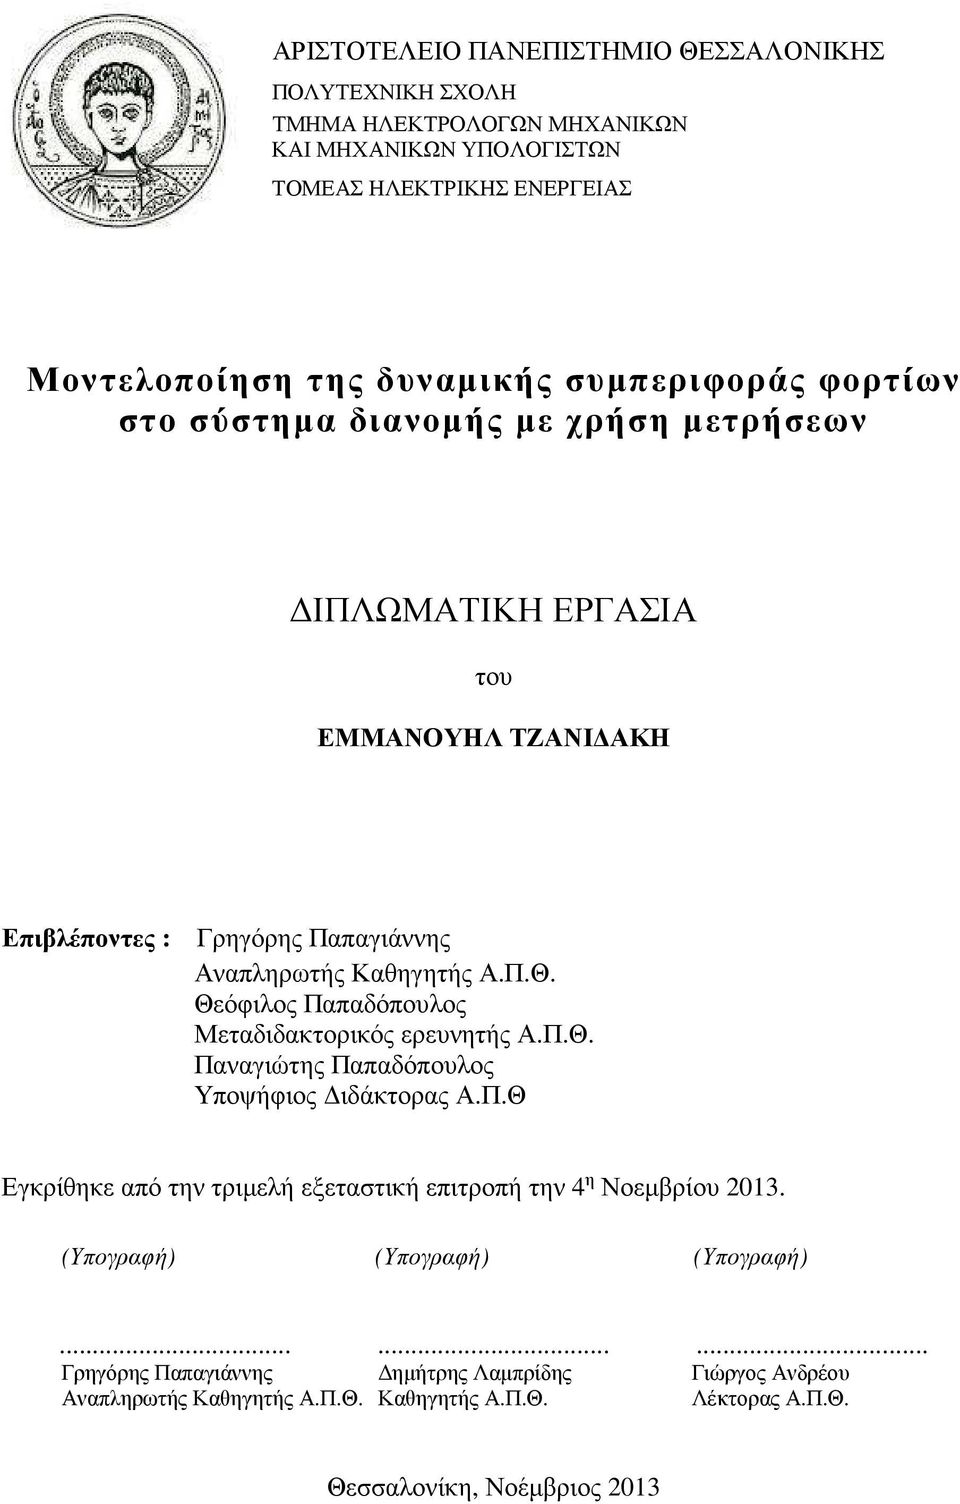 Θεόφιλος Παπαδόπουλος Μεταδιδακτορικός ερευνητής Α.Π.Θ. Παναγιώτης Παπαδόπουλος Υποψήφιος ιδάκτορας Α.Π.Θ Εγκρίθηκε από την τριµελή εξεταστική επιτροπή την 4 η Νοεµβρίου 2013.